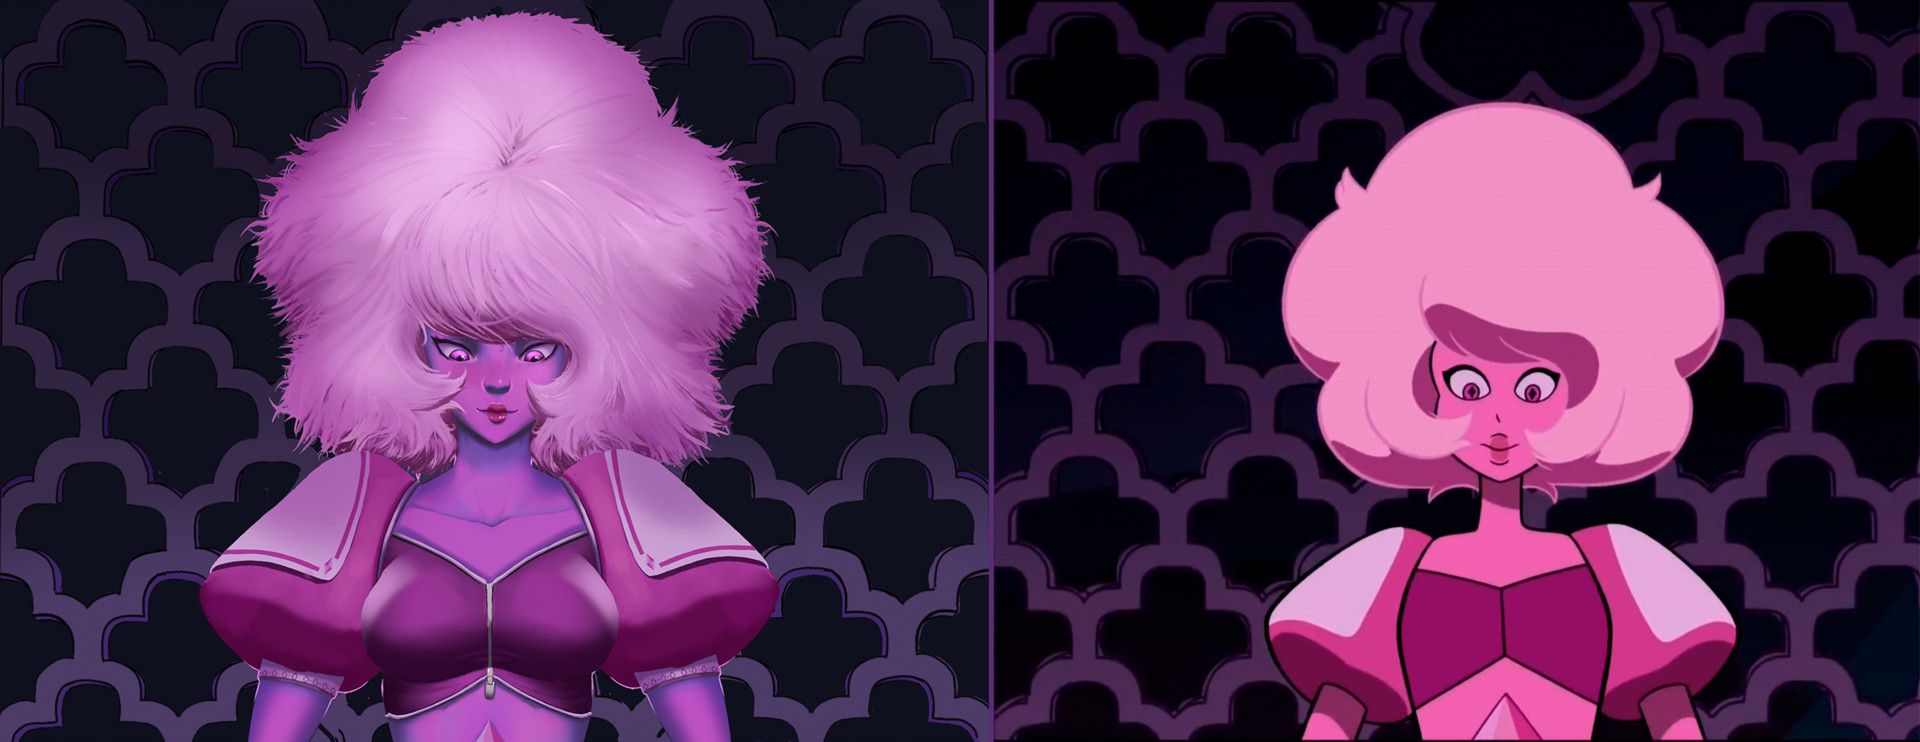 Delfox Pink Diamond - minh chứng rõ ràng cho sự huyền bí của loạt phim Steven Universe. Từ phần cách tân cho đến tính cách độc đáo của nhân vật, hình ảnh này cuốn hút và không thể bỏ qua.